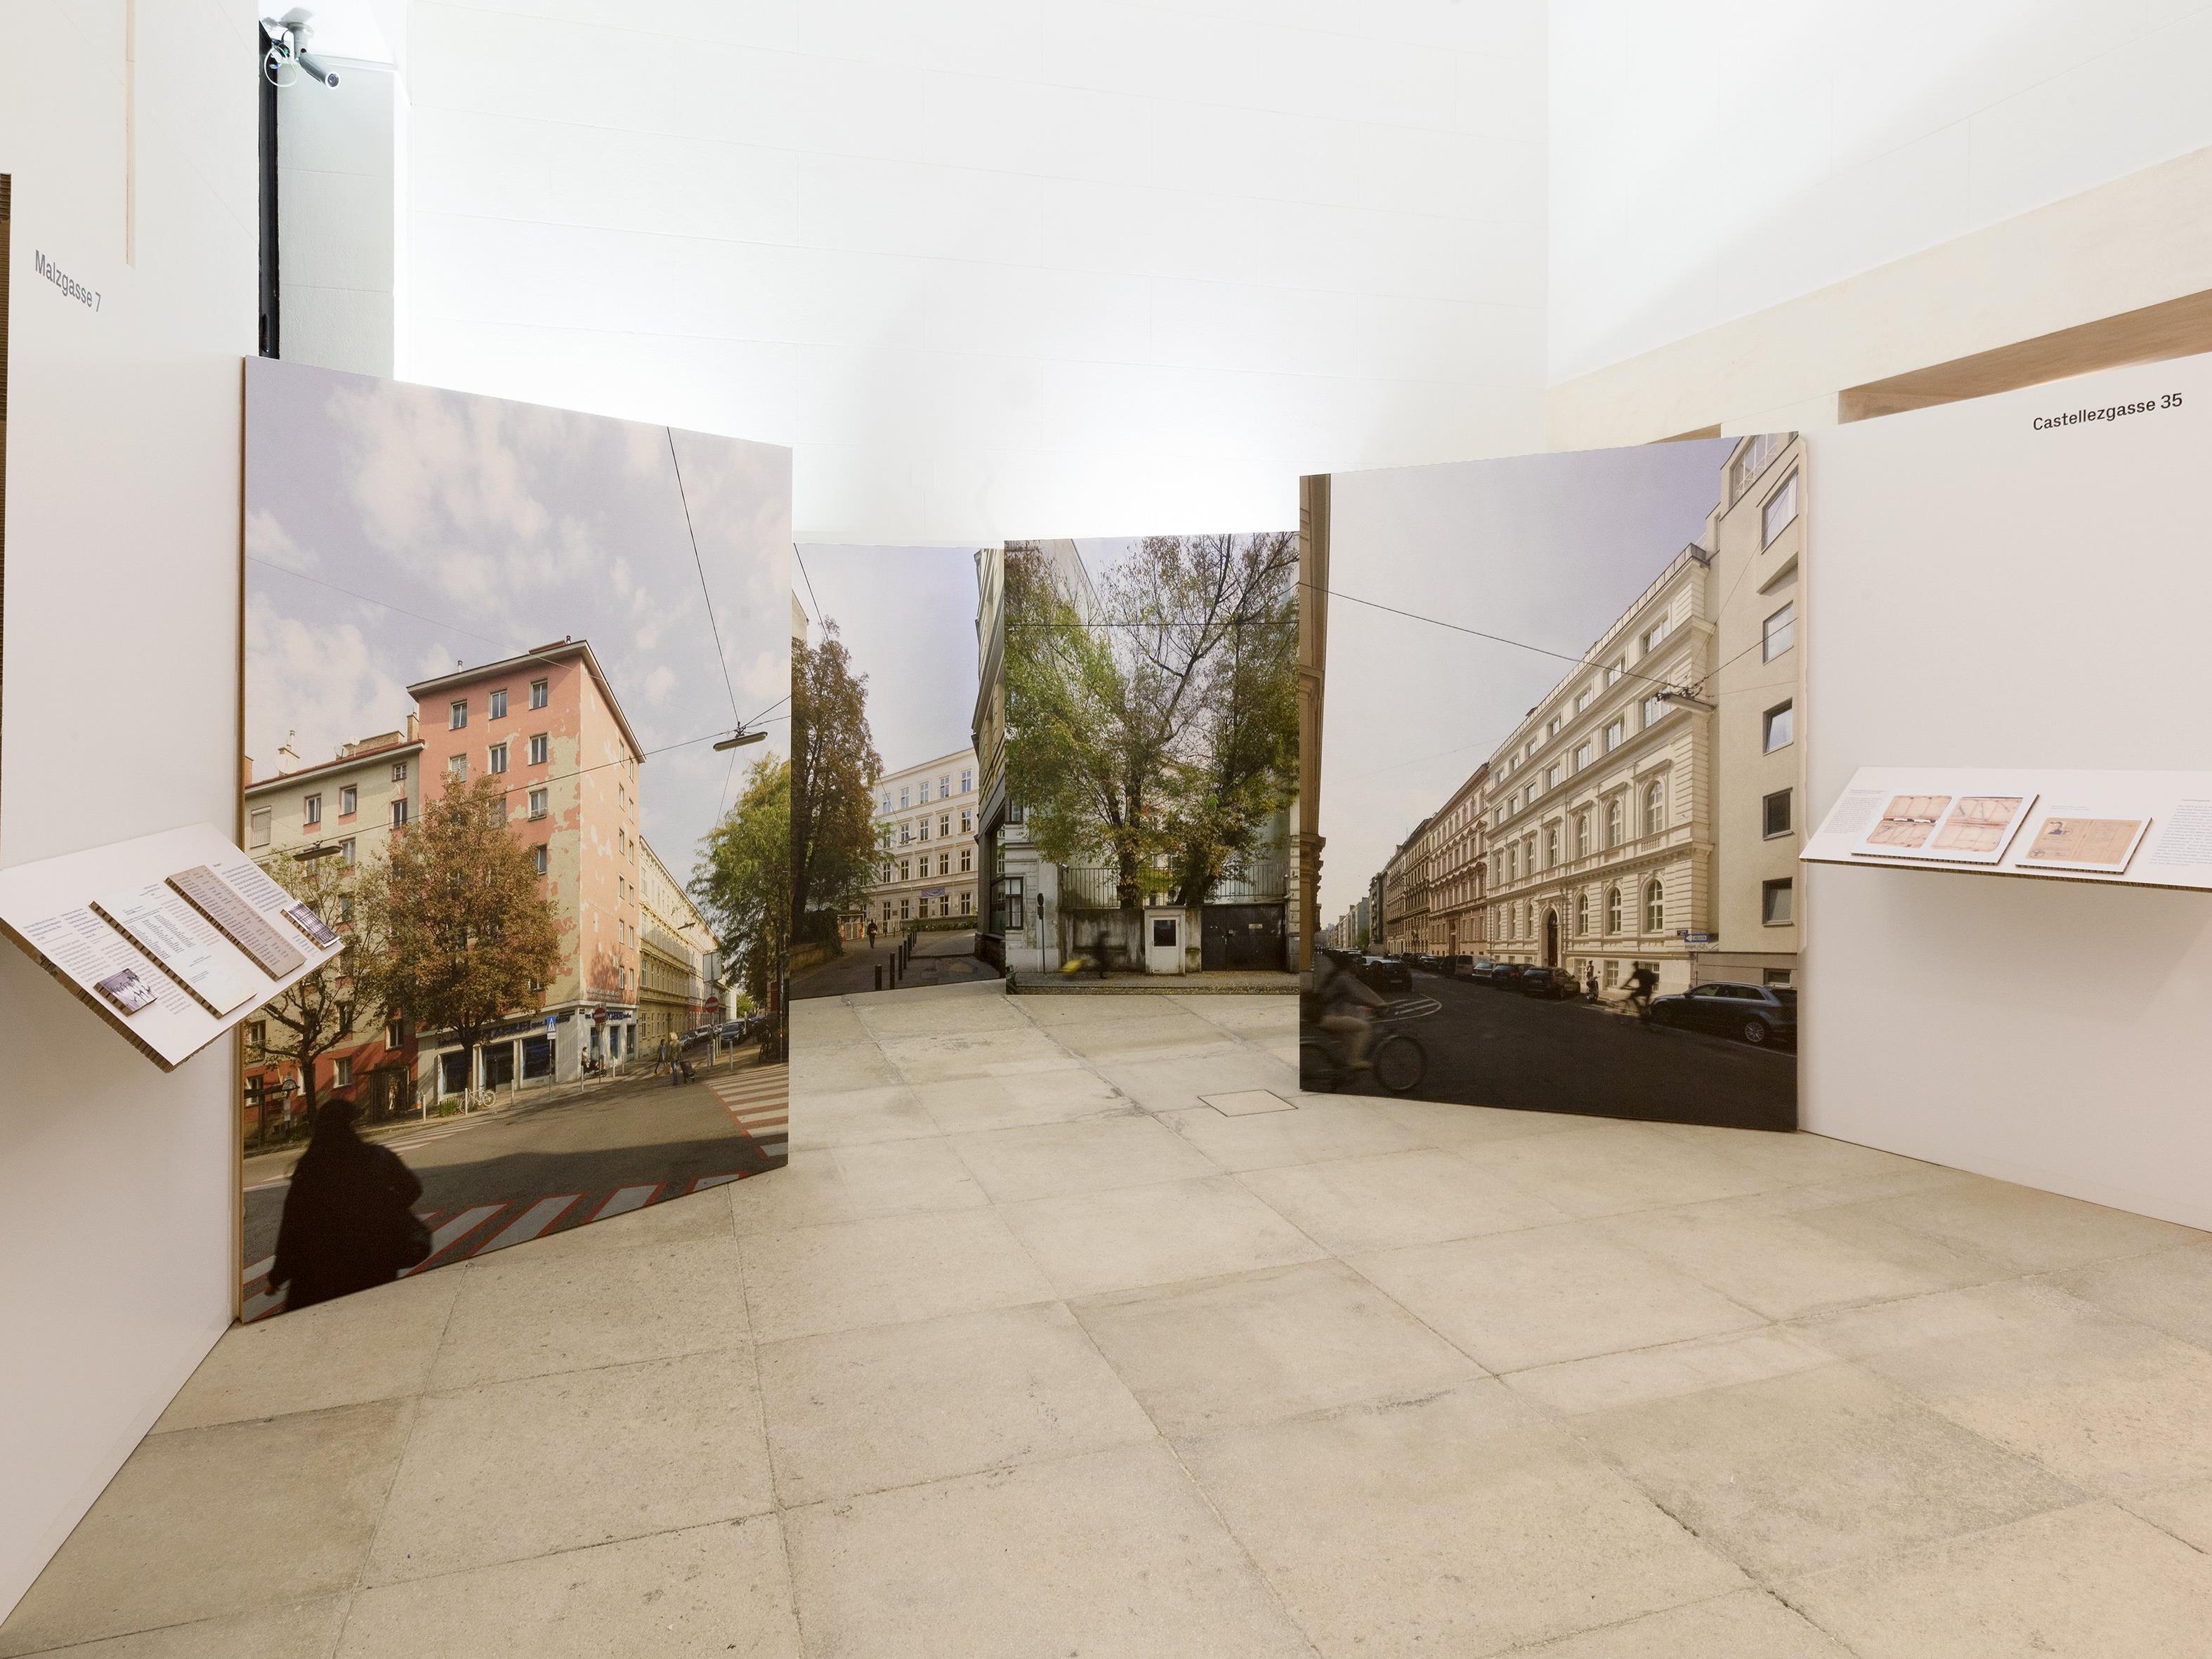 Ausstellung "Letzte Orte vor der Deportation" in Wien